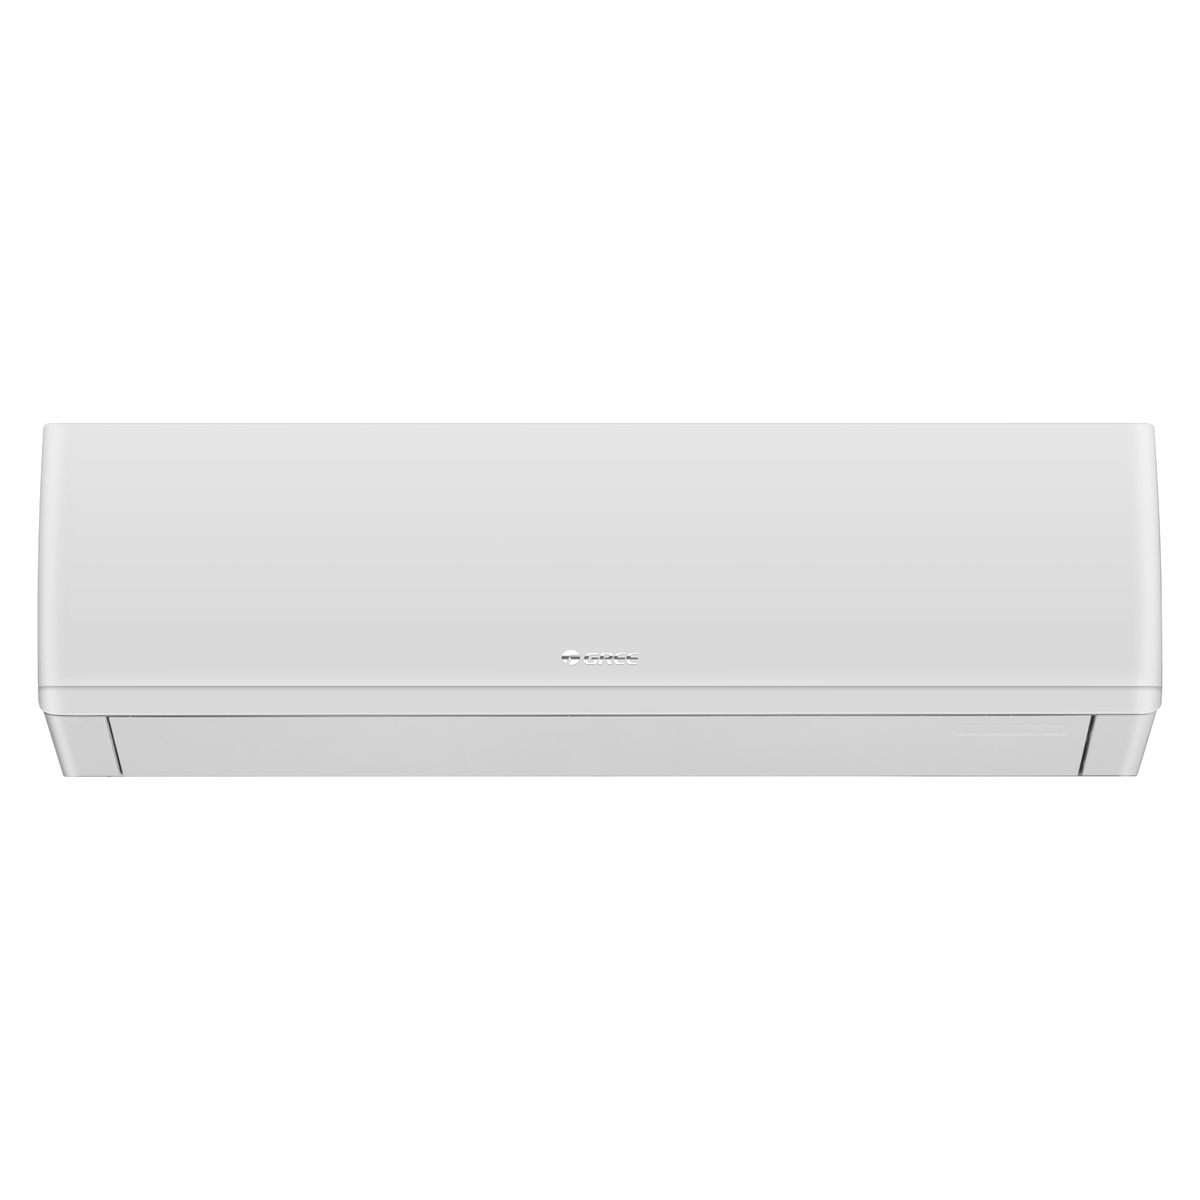 Gree Split Air Conditioner, 3 Ton, White, iSavePlus-P36H3